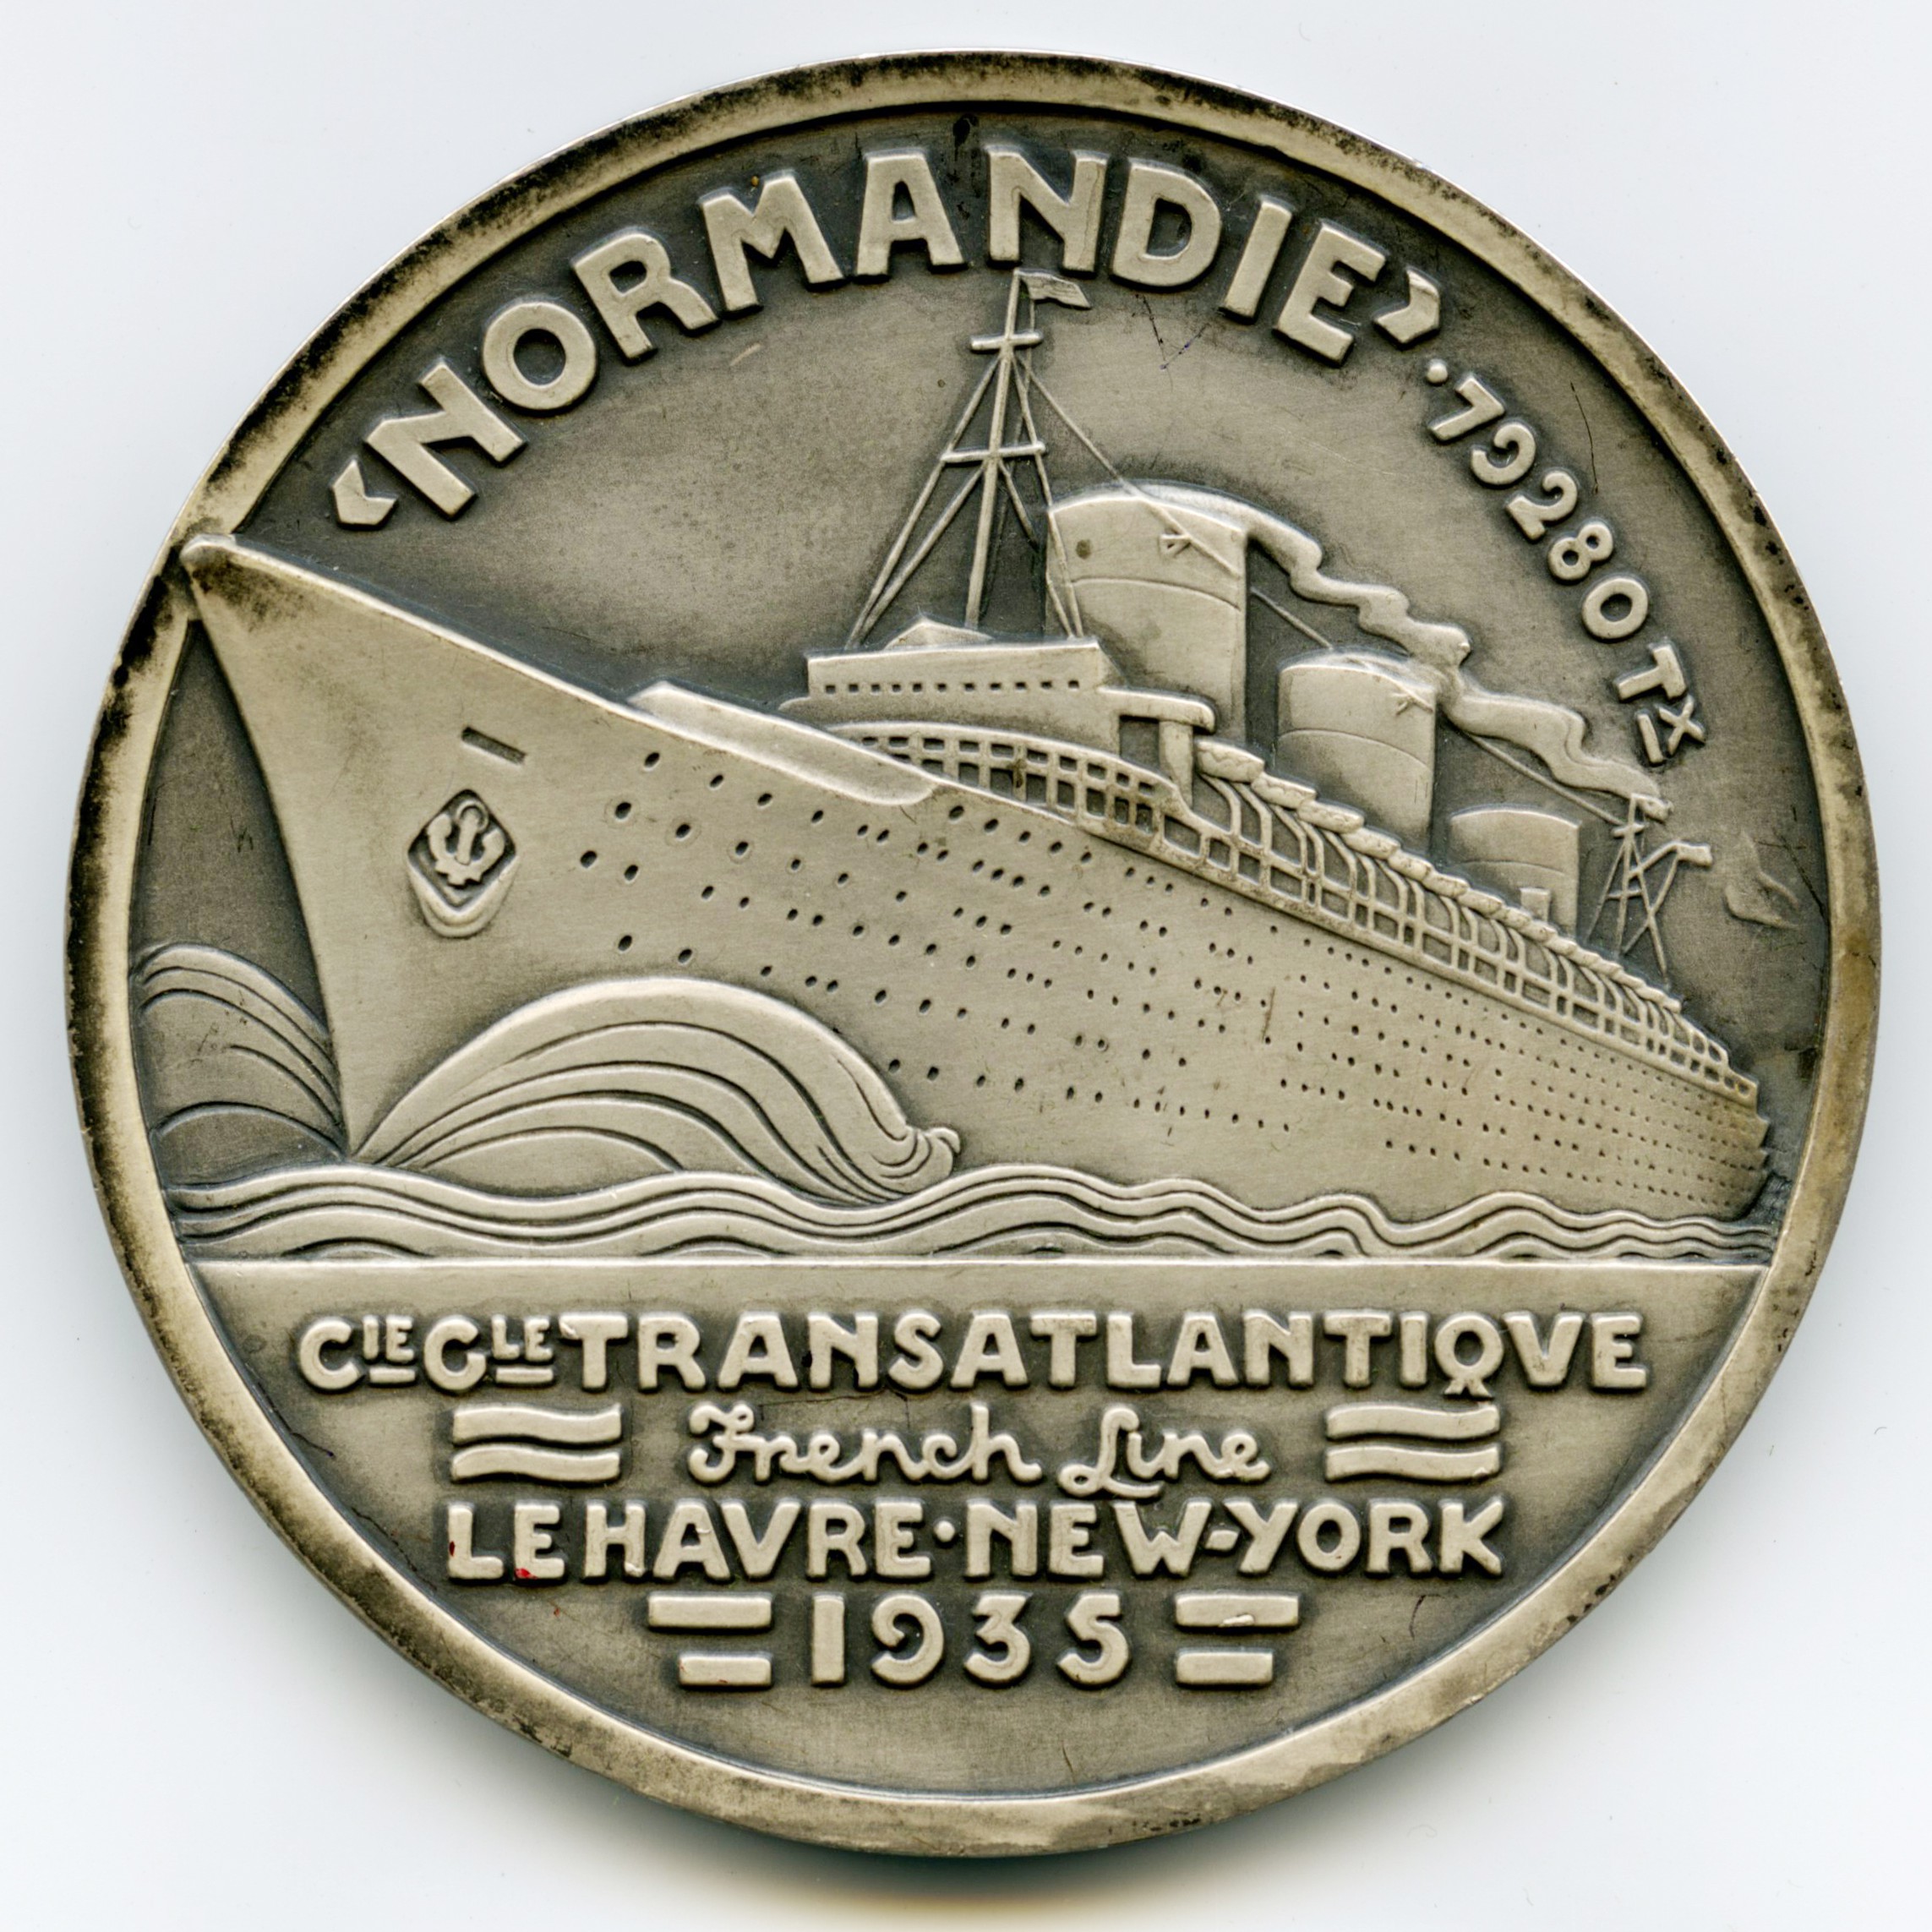 Le Normandie - Médaille Argent - 1935 revers